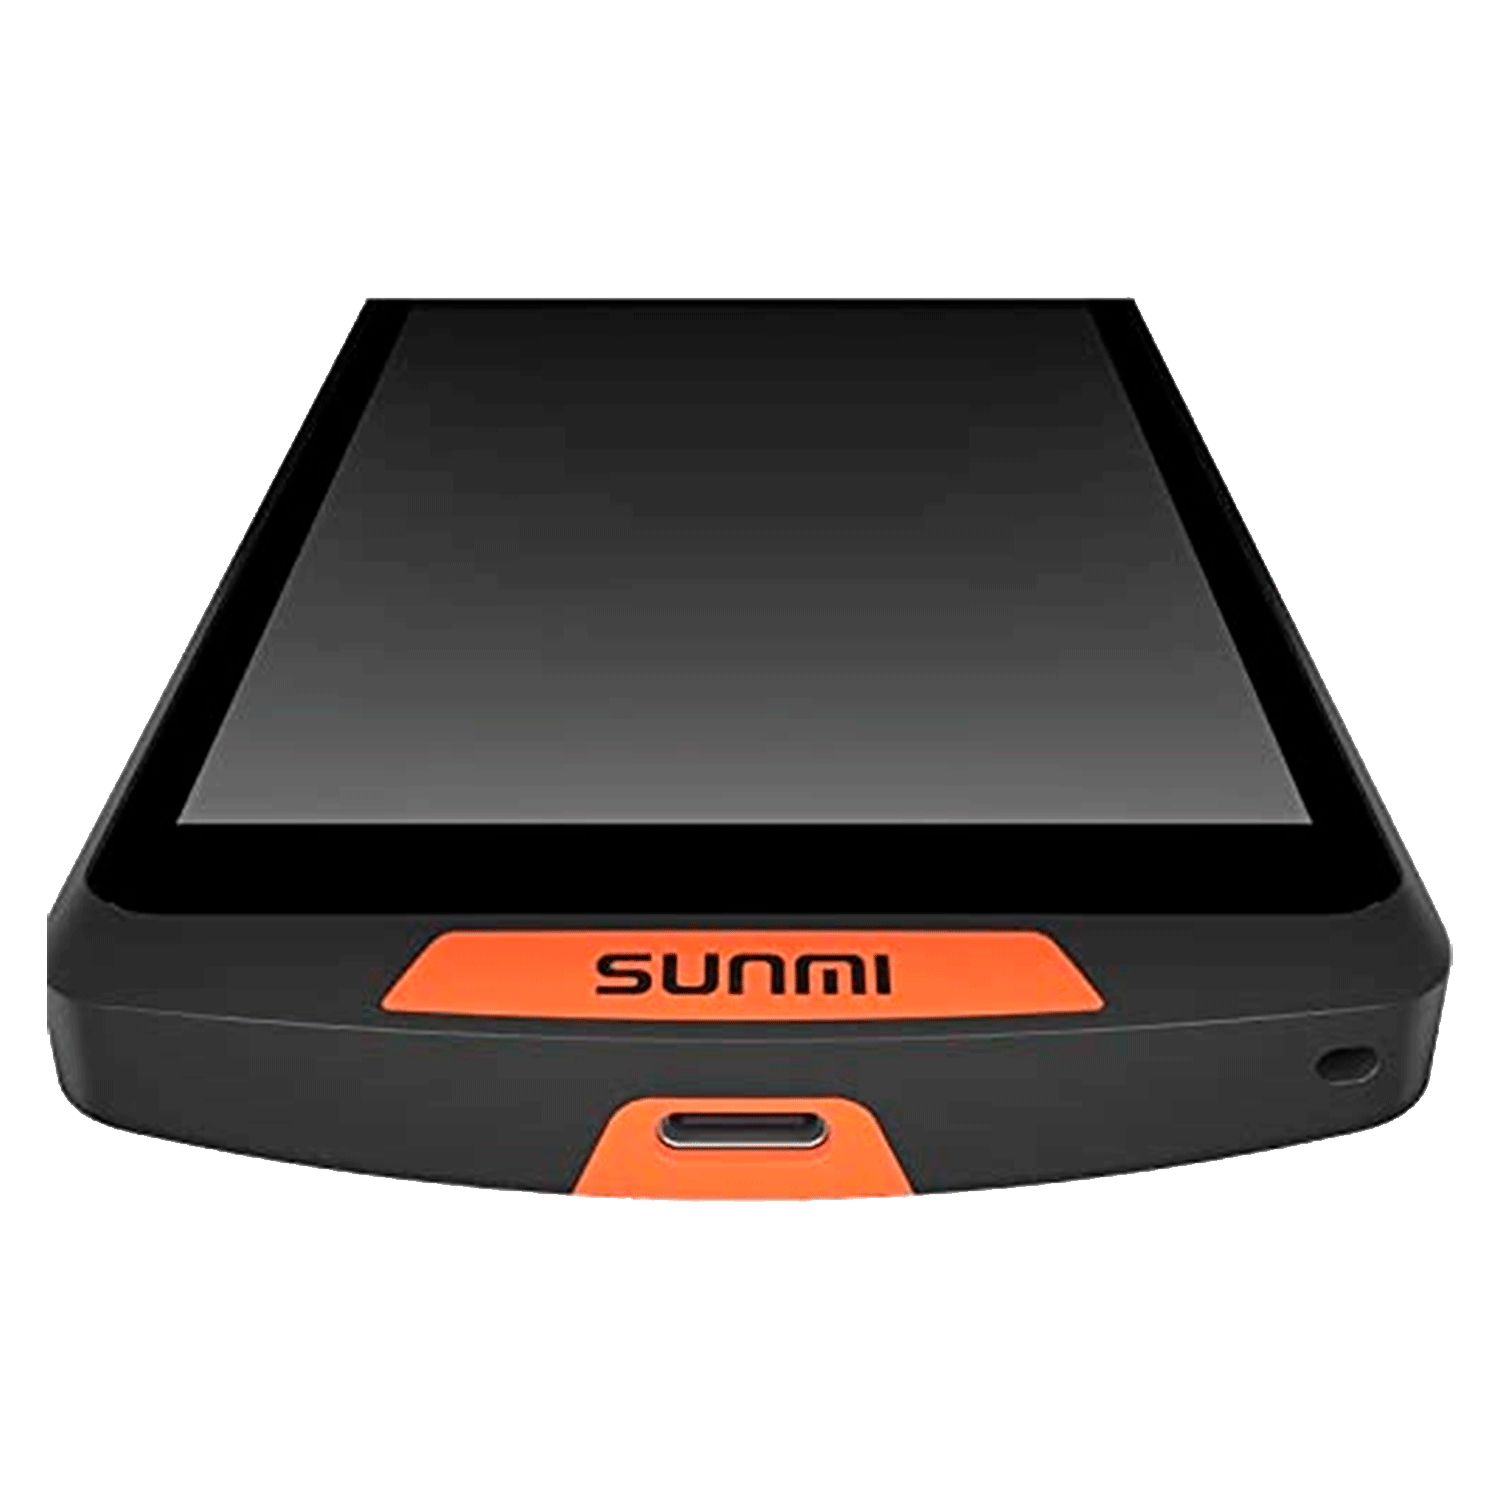 Terminal de Vendas POS Portátil Sunmi M2 T7821 PDA Bluetooth / Android 7.1 - Preto